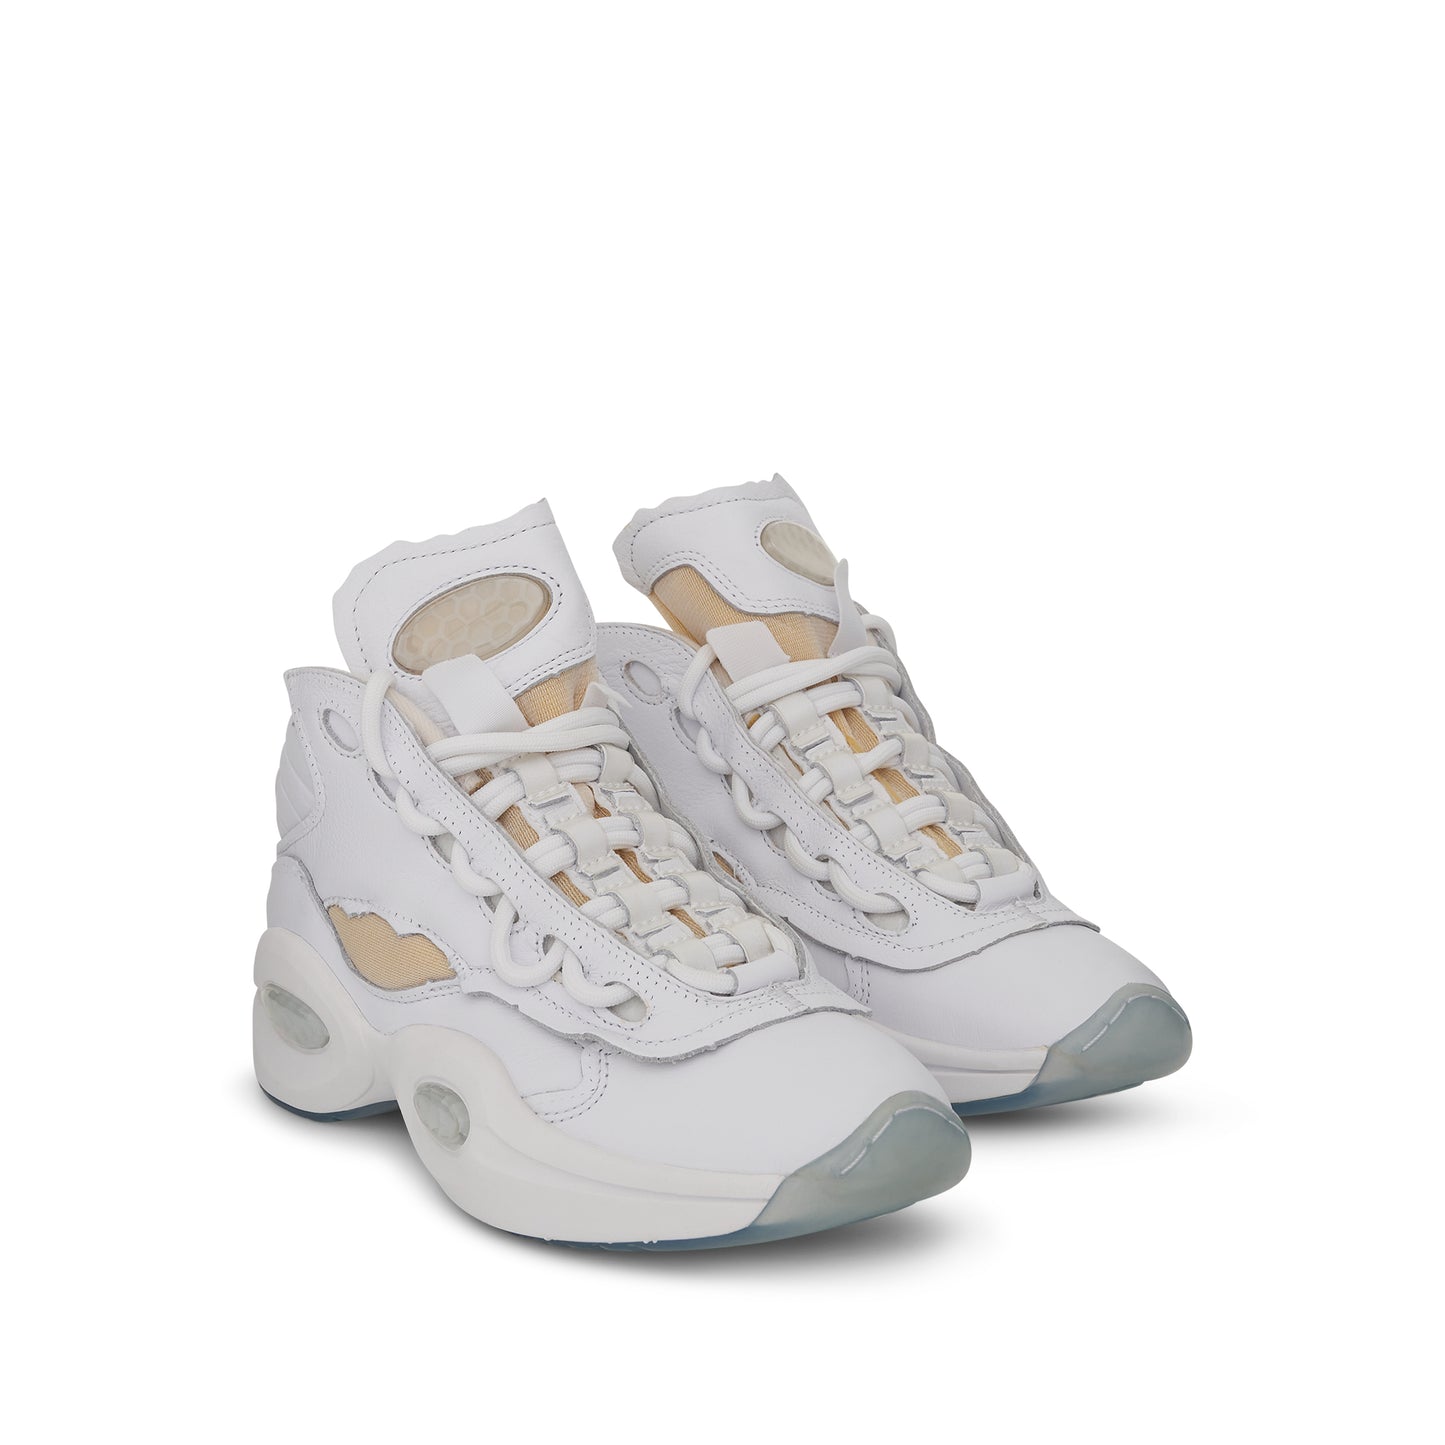 Reebok x Maison Margiela Project 0 TQ Memory OF Sneaker in White